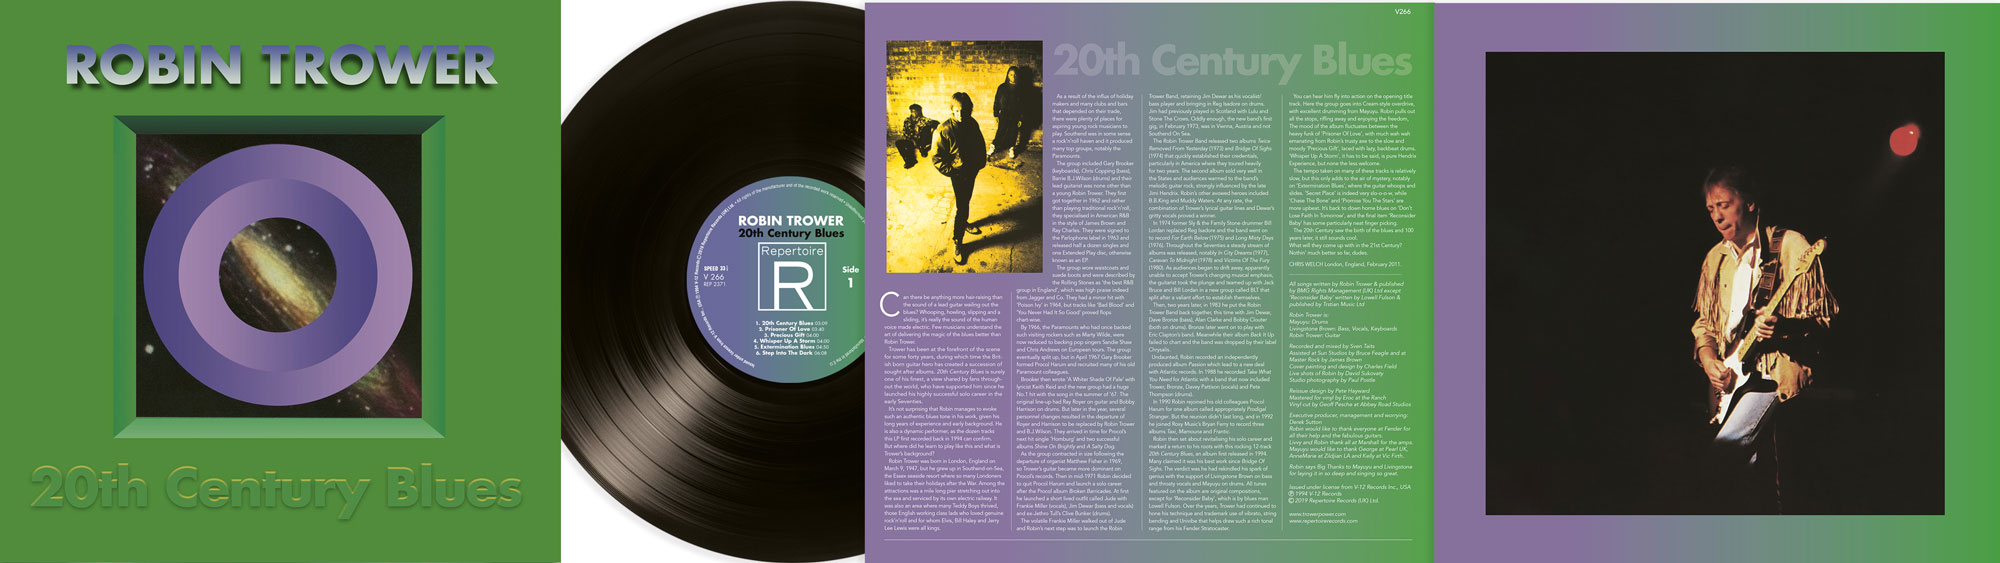 20th Century Blues - LP